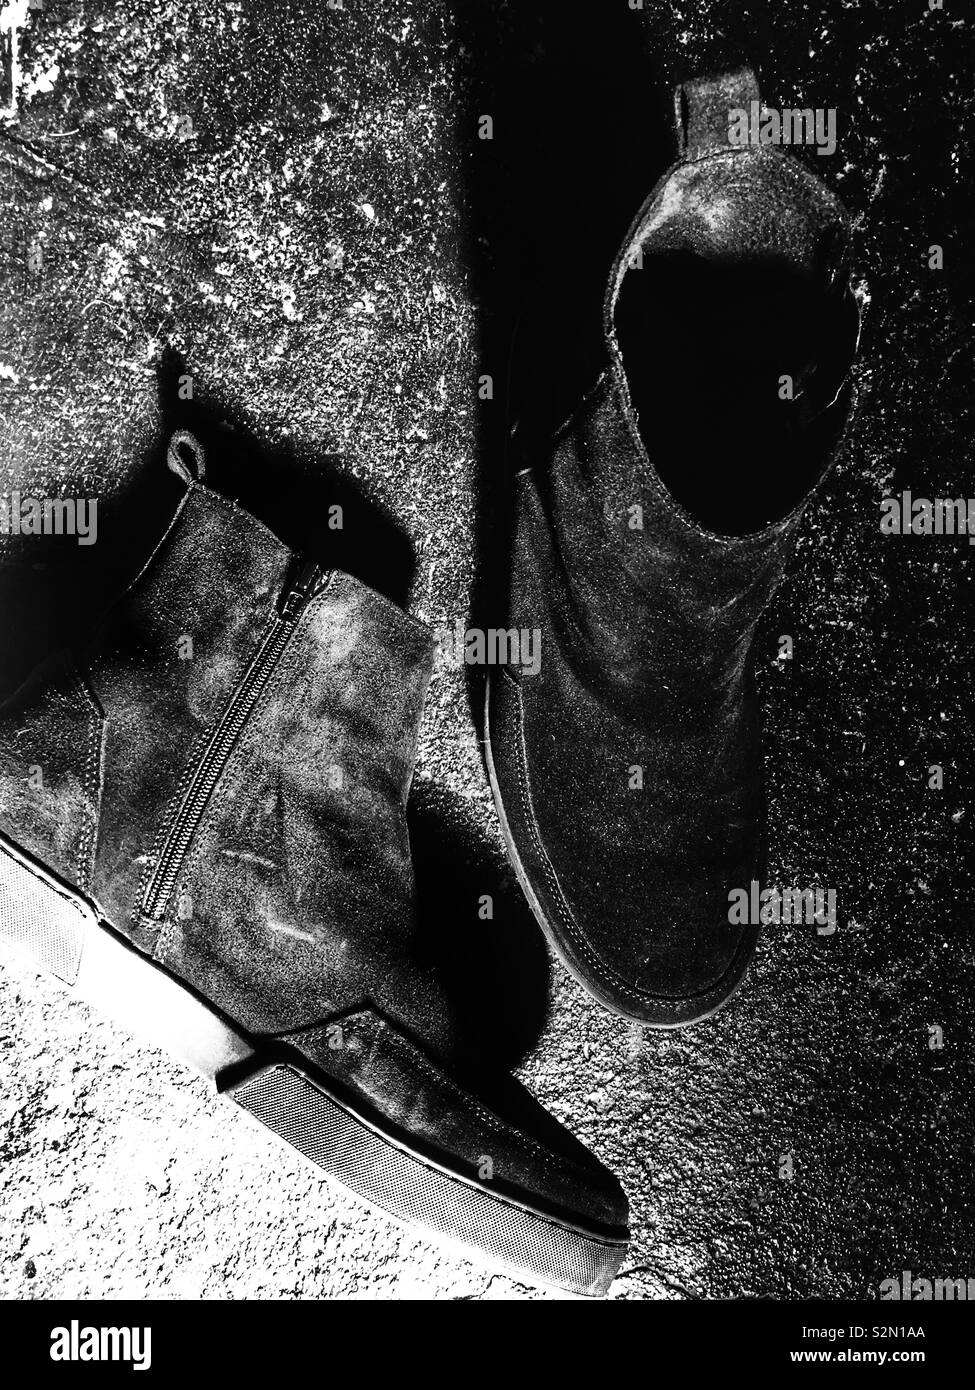 Zign scarpe da uomo immagini e fotografie stock ad alta risoluzione - Alamy